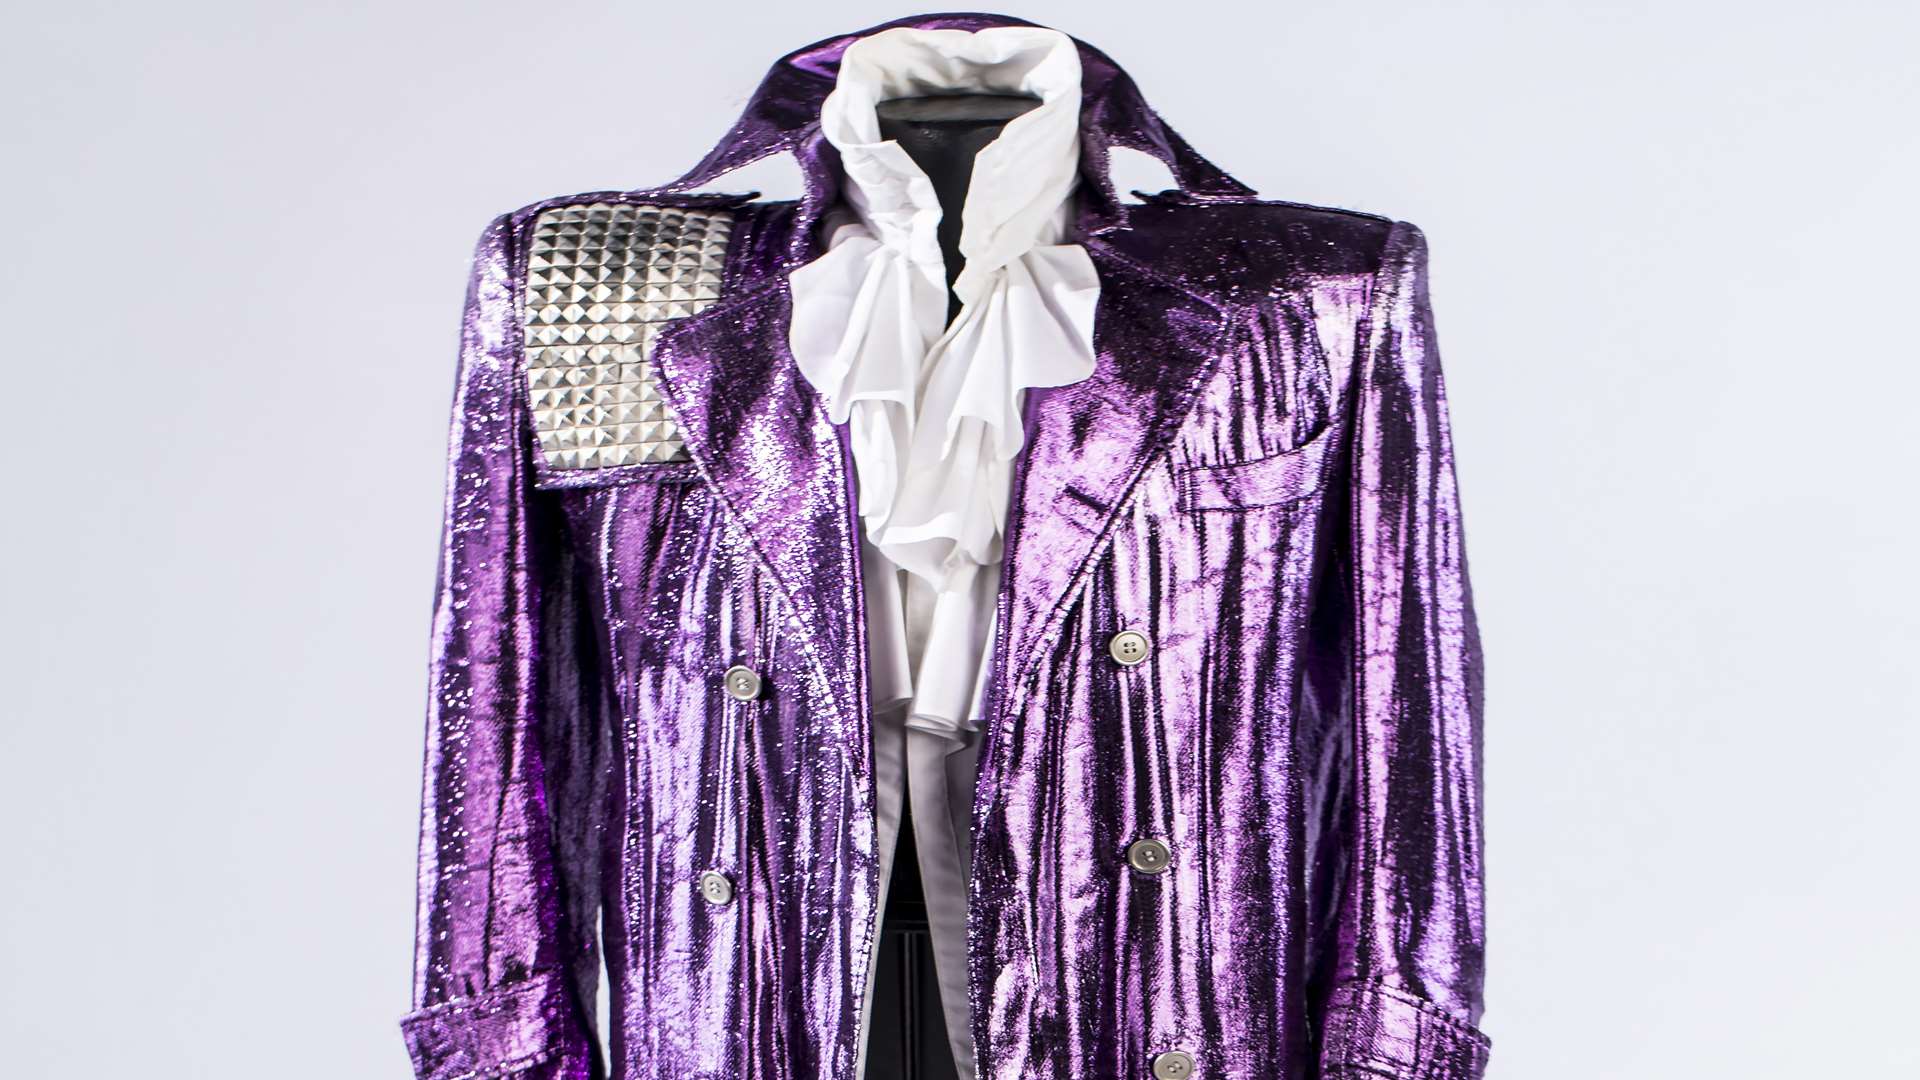 The Purple Rain jacket Picture: Paisley Park